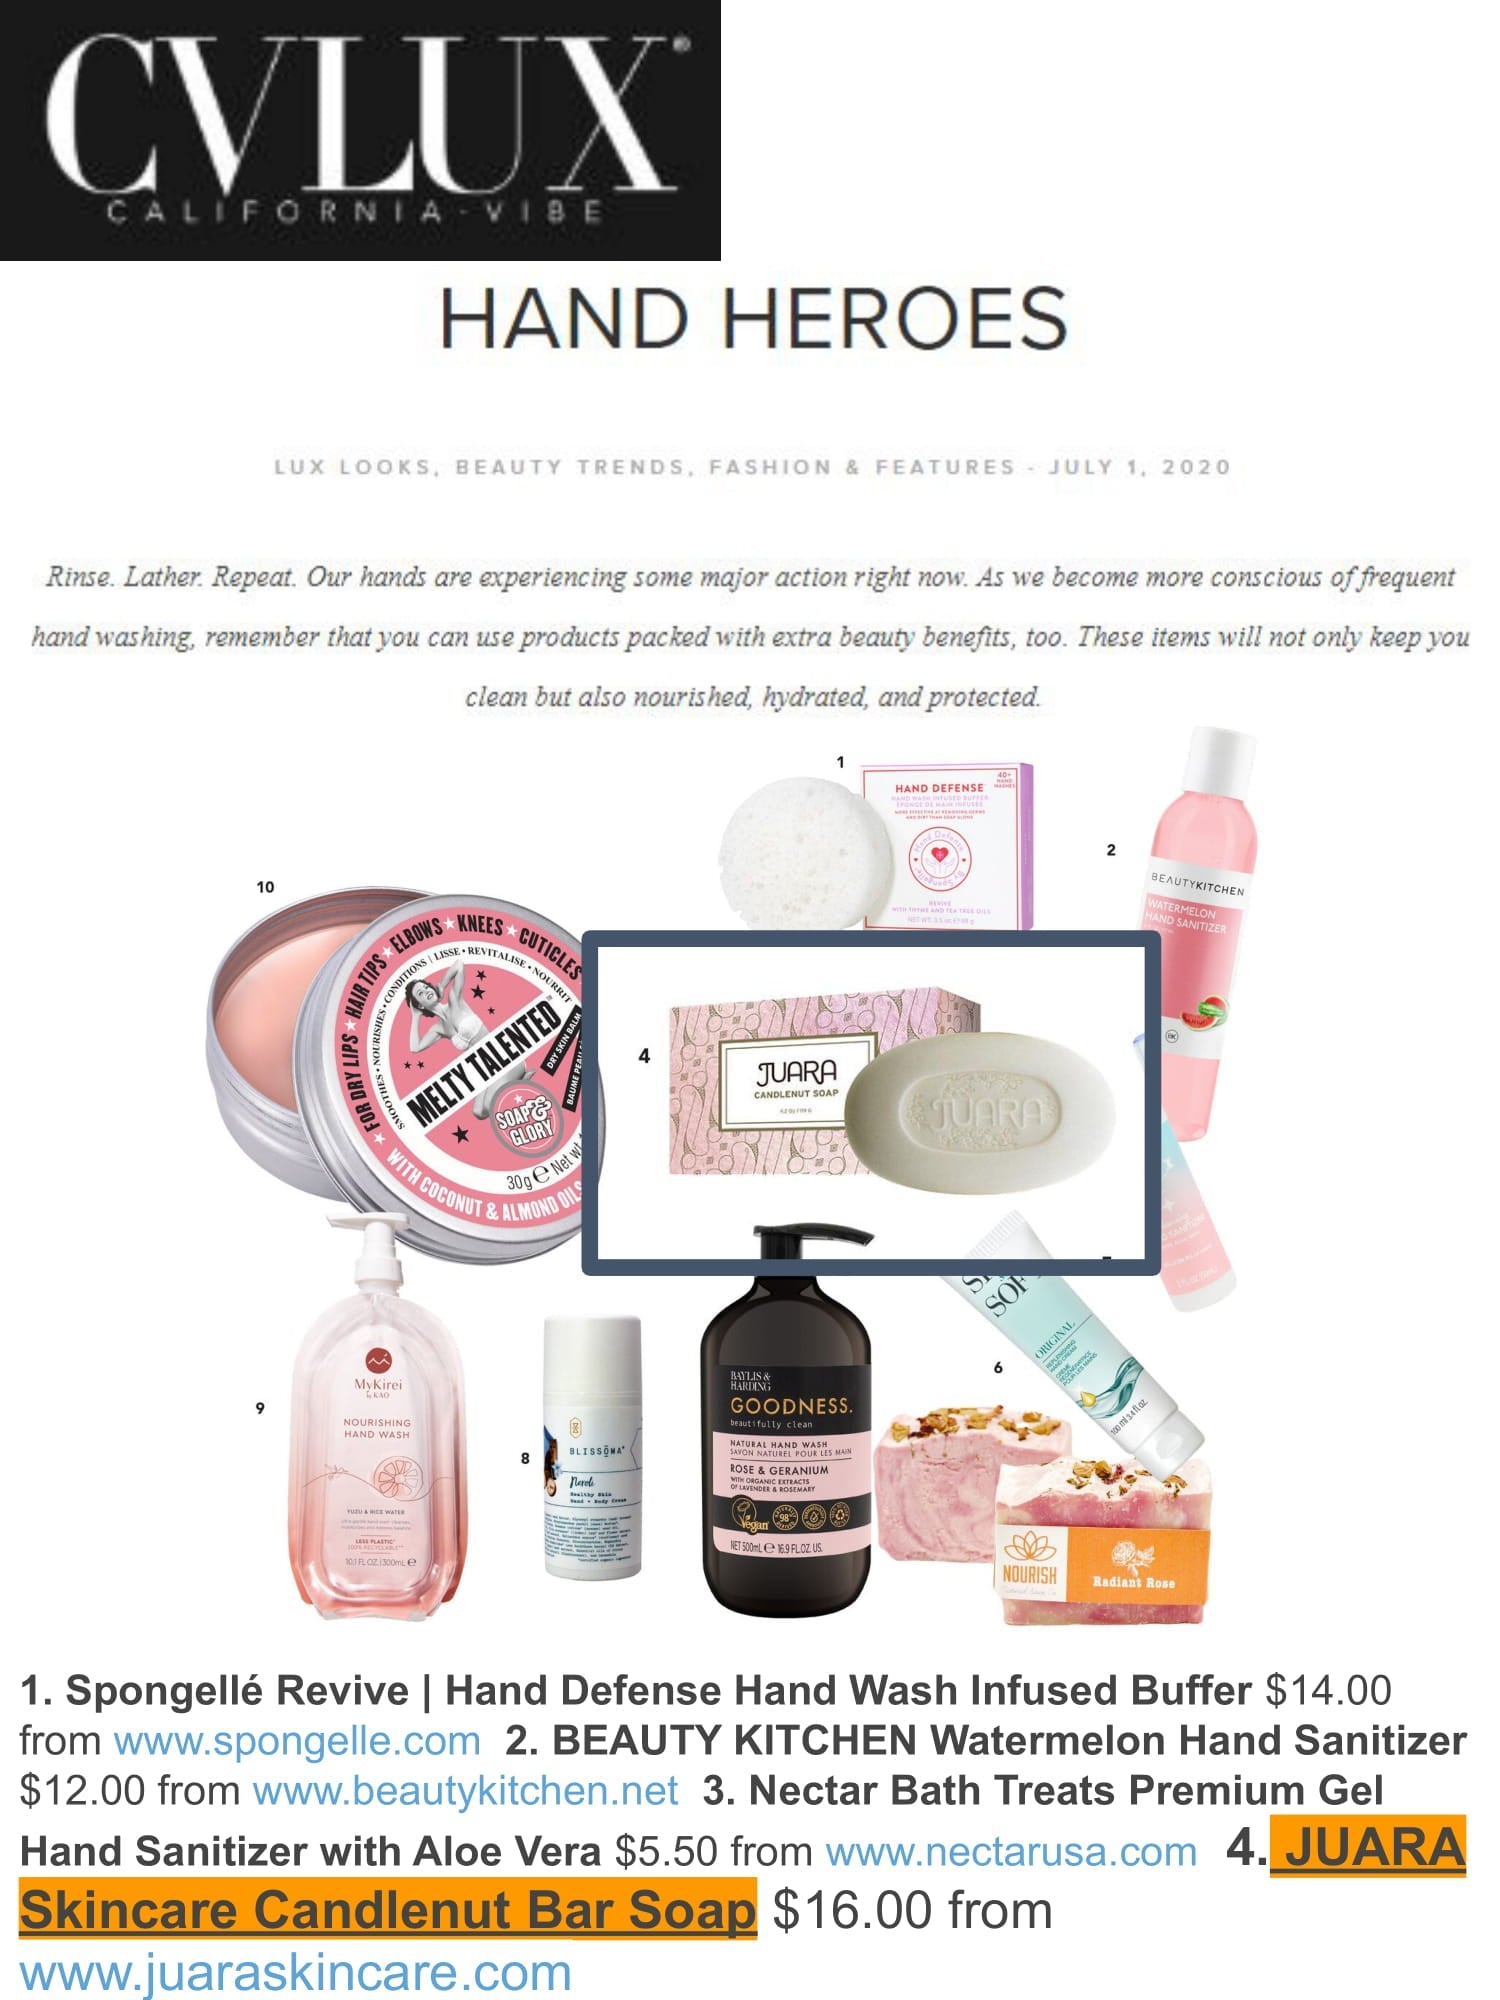 CV LUX: Hand Heroes JUARA Skincare